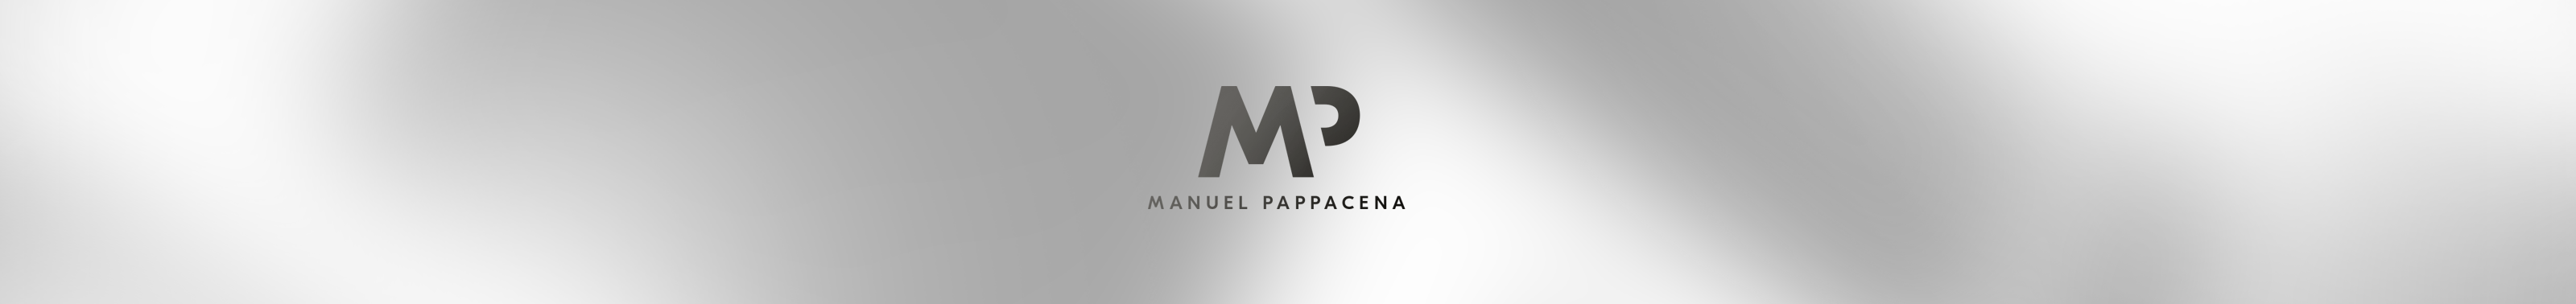 Manuel Pappacena profil başlığı